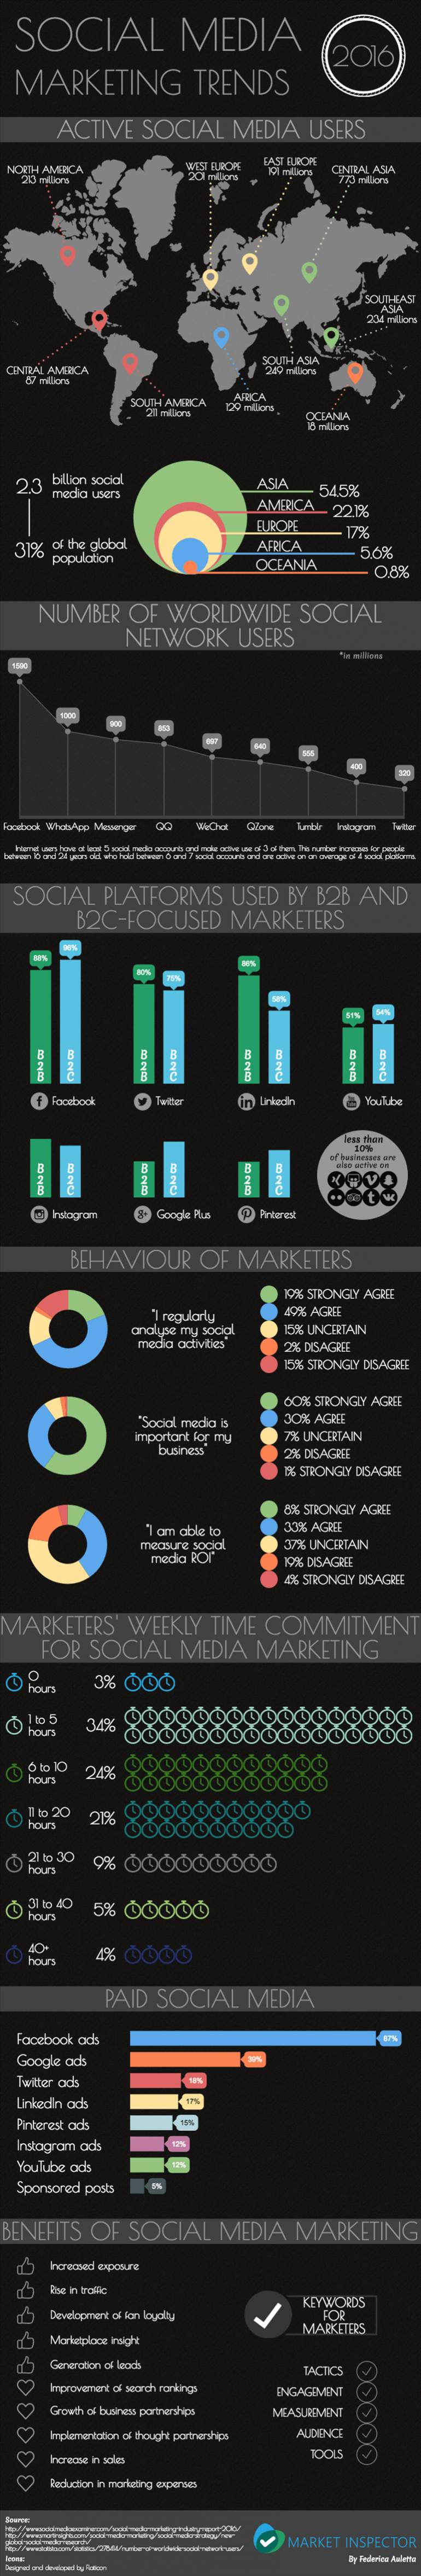 Social Media Marketing Trends 2016